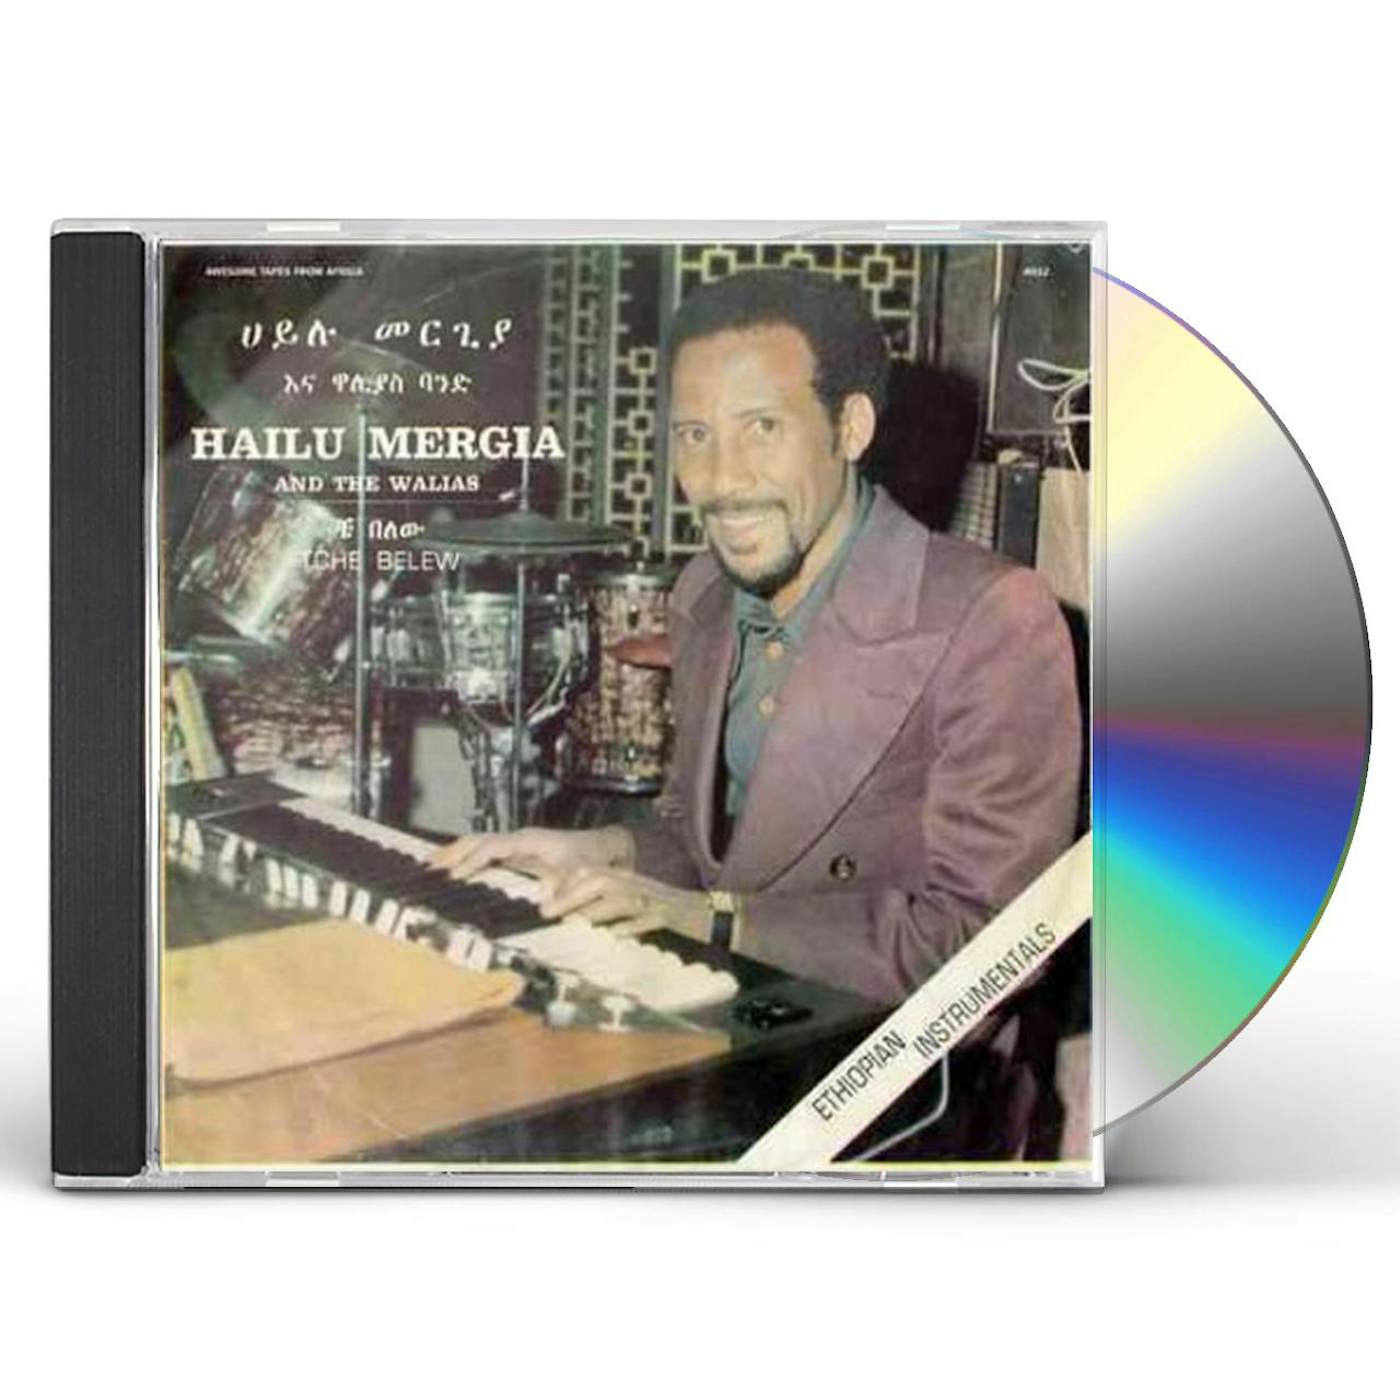 Hailu Mergia & The Walias TCHE BELEW CD